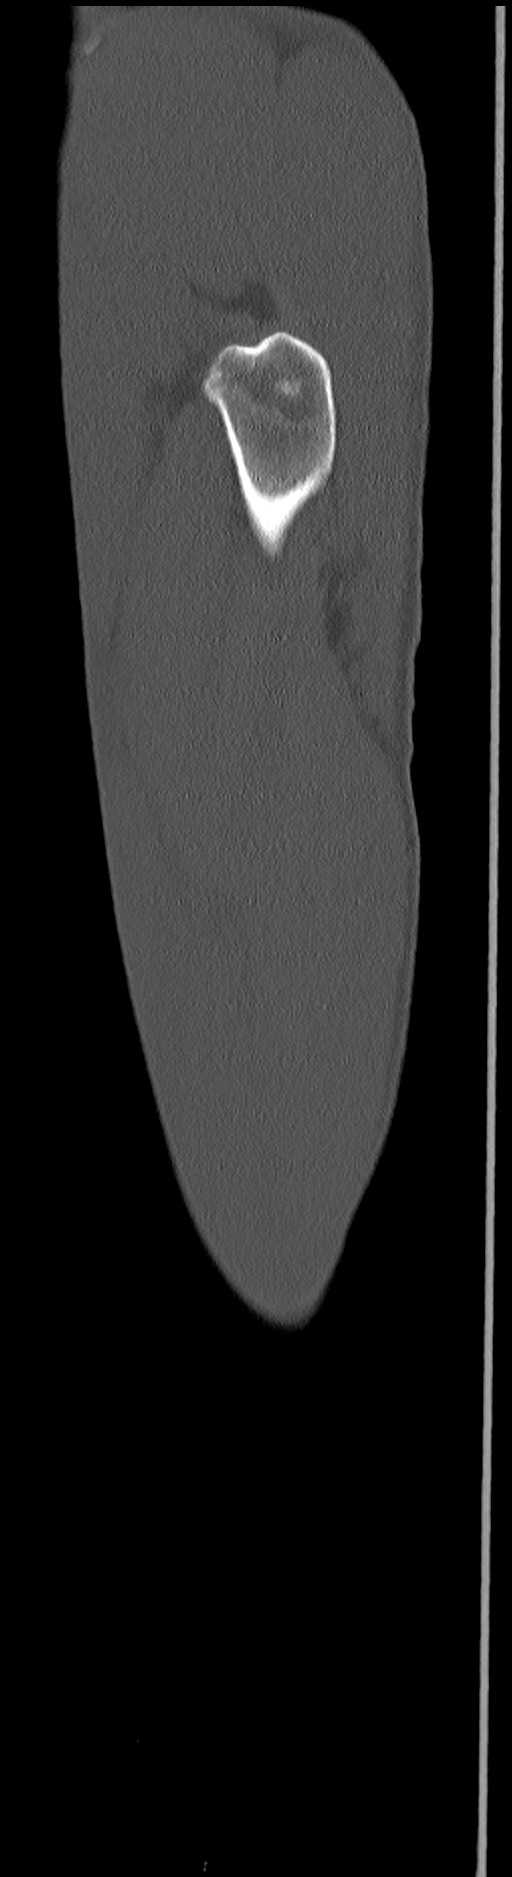 Chronic osteomyelitis (with sequestrum) (Radiopaedia 74813-85822 C 15).jpg